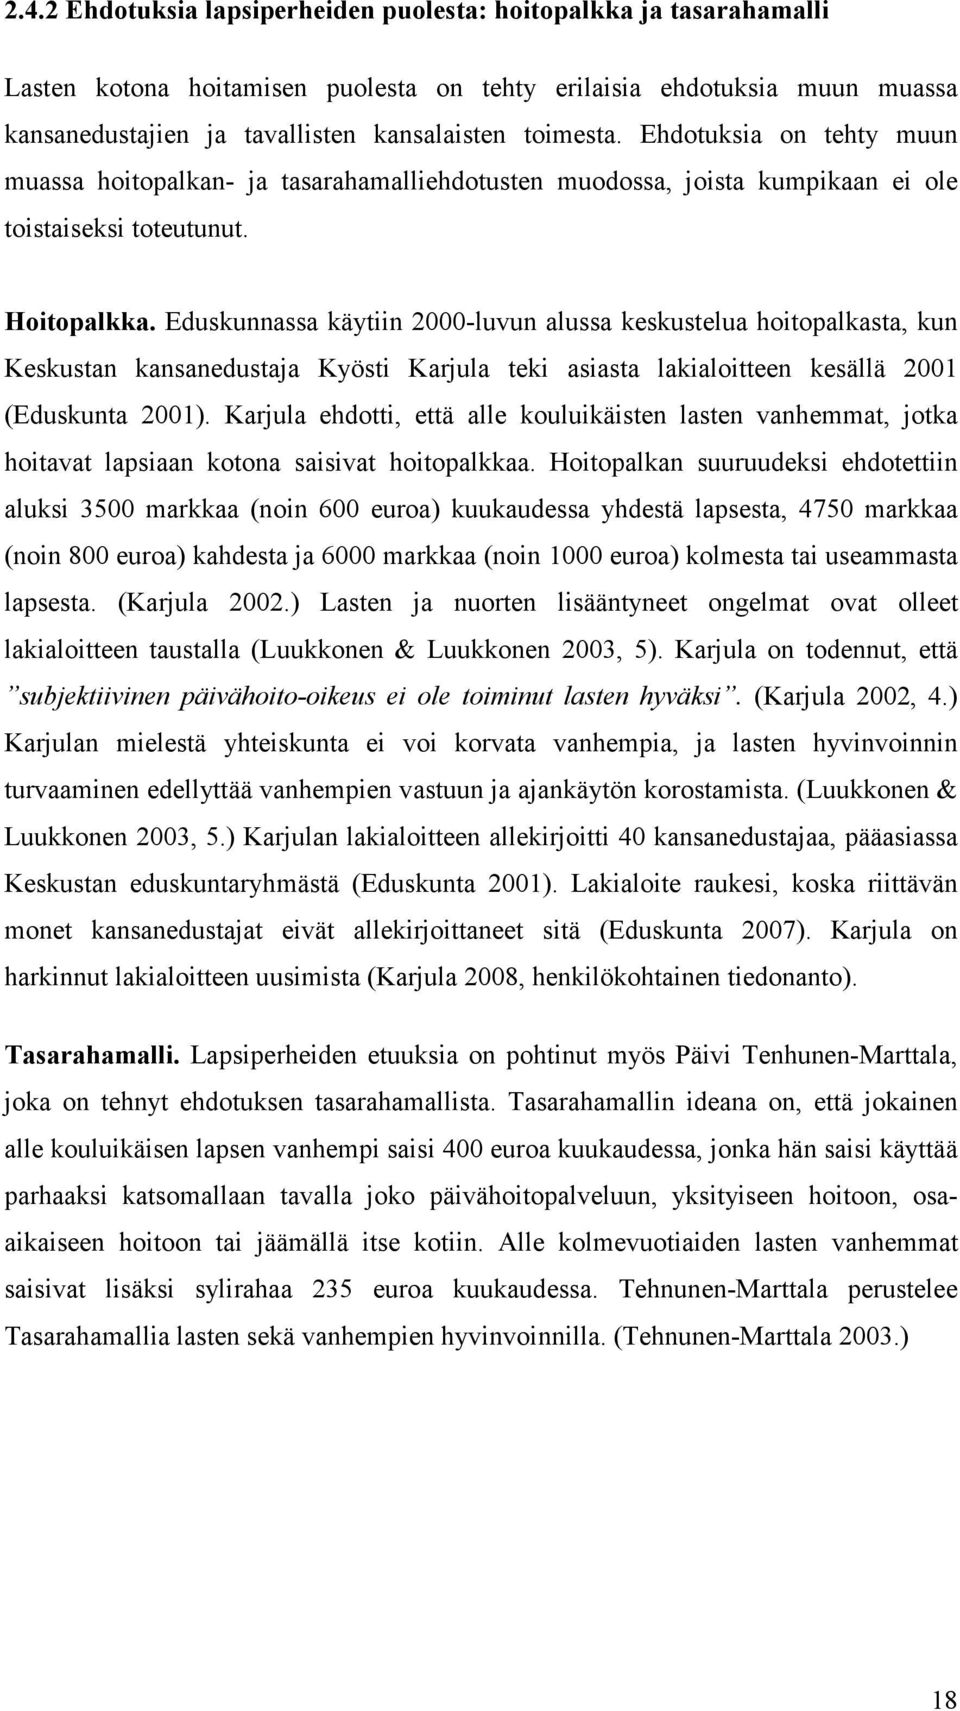 Eduskunnassa käytiin 2000-luvun alussa keskustelua hoitopalkasta, kun Keskustan kansanedustaja Kyösti Karjula teki asiasta lakialoitteen kesällä 2001 (Eduskunta 2001).